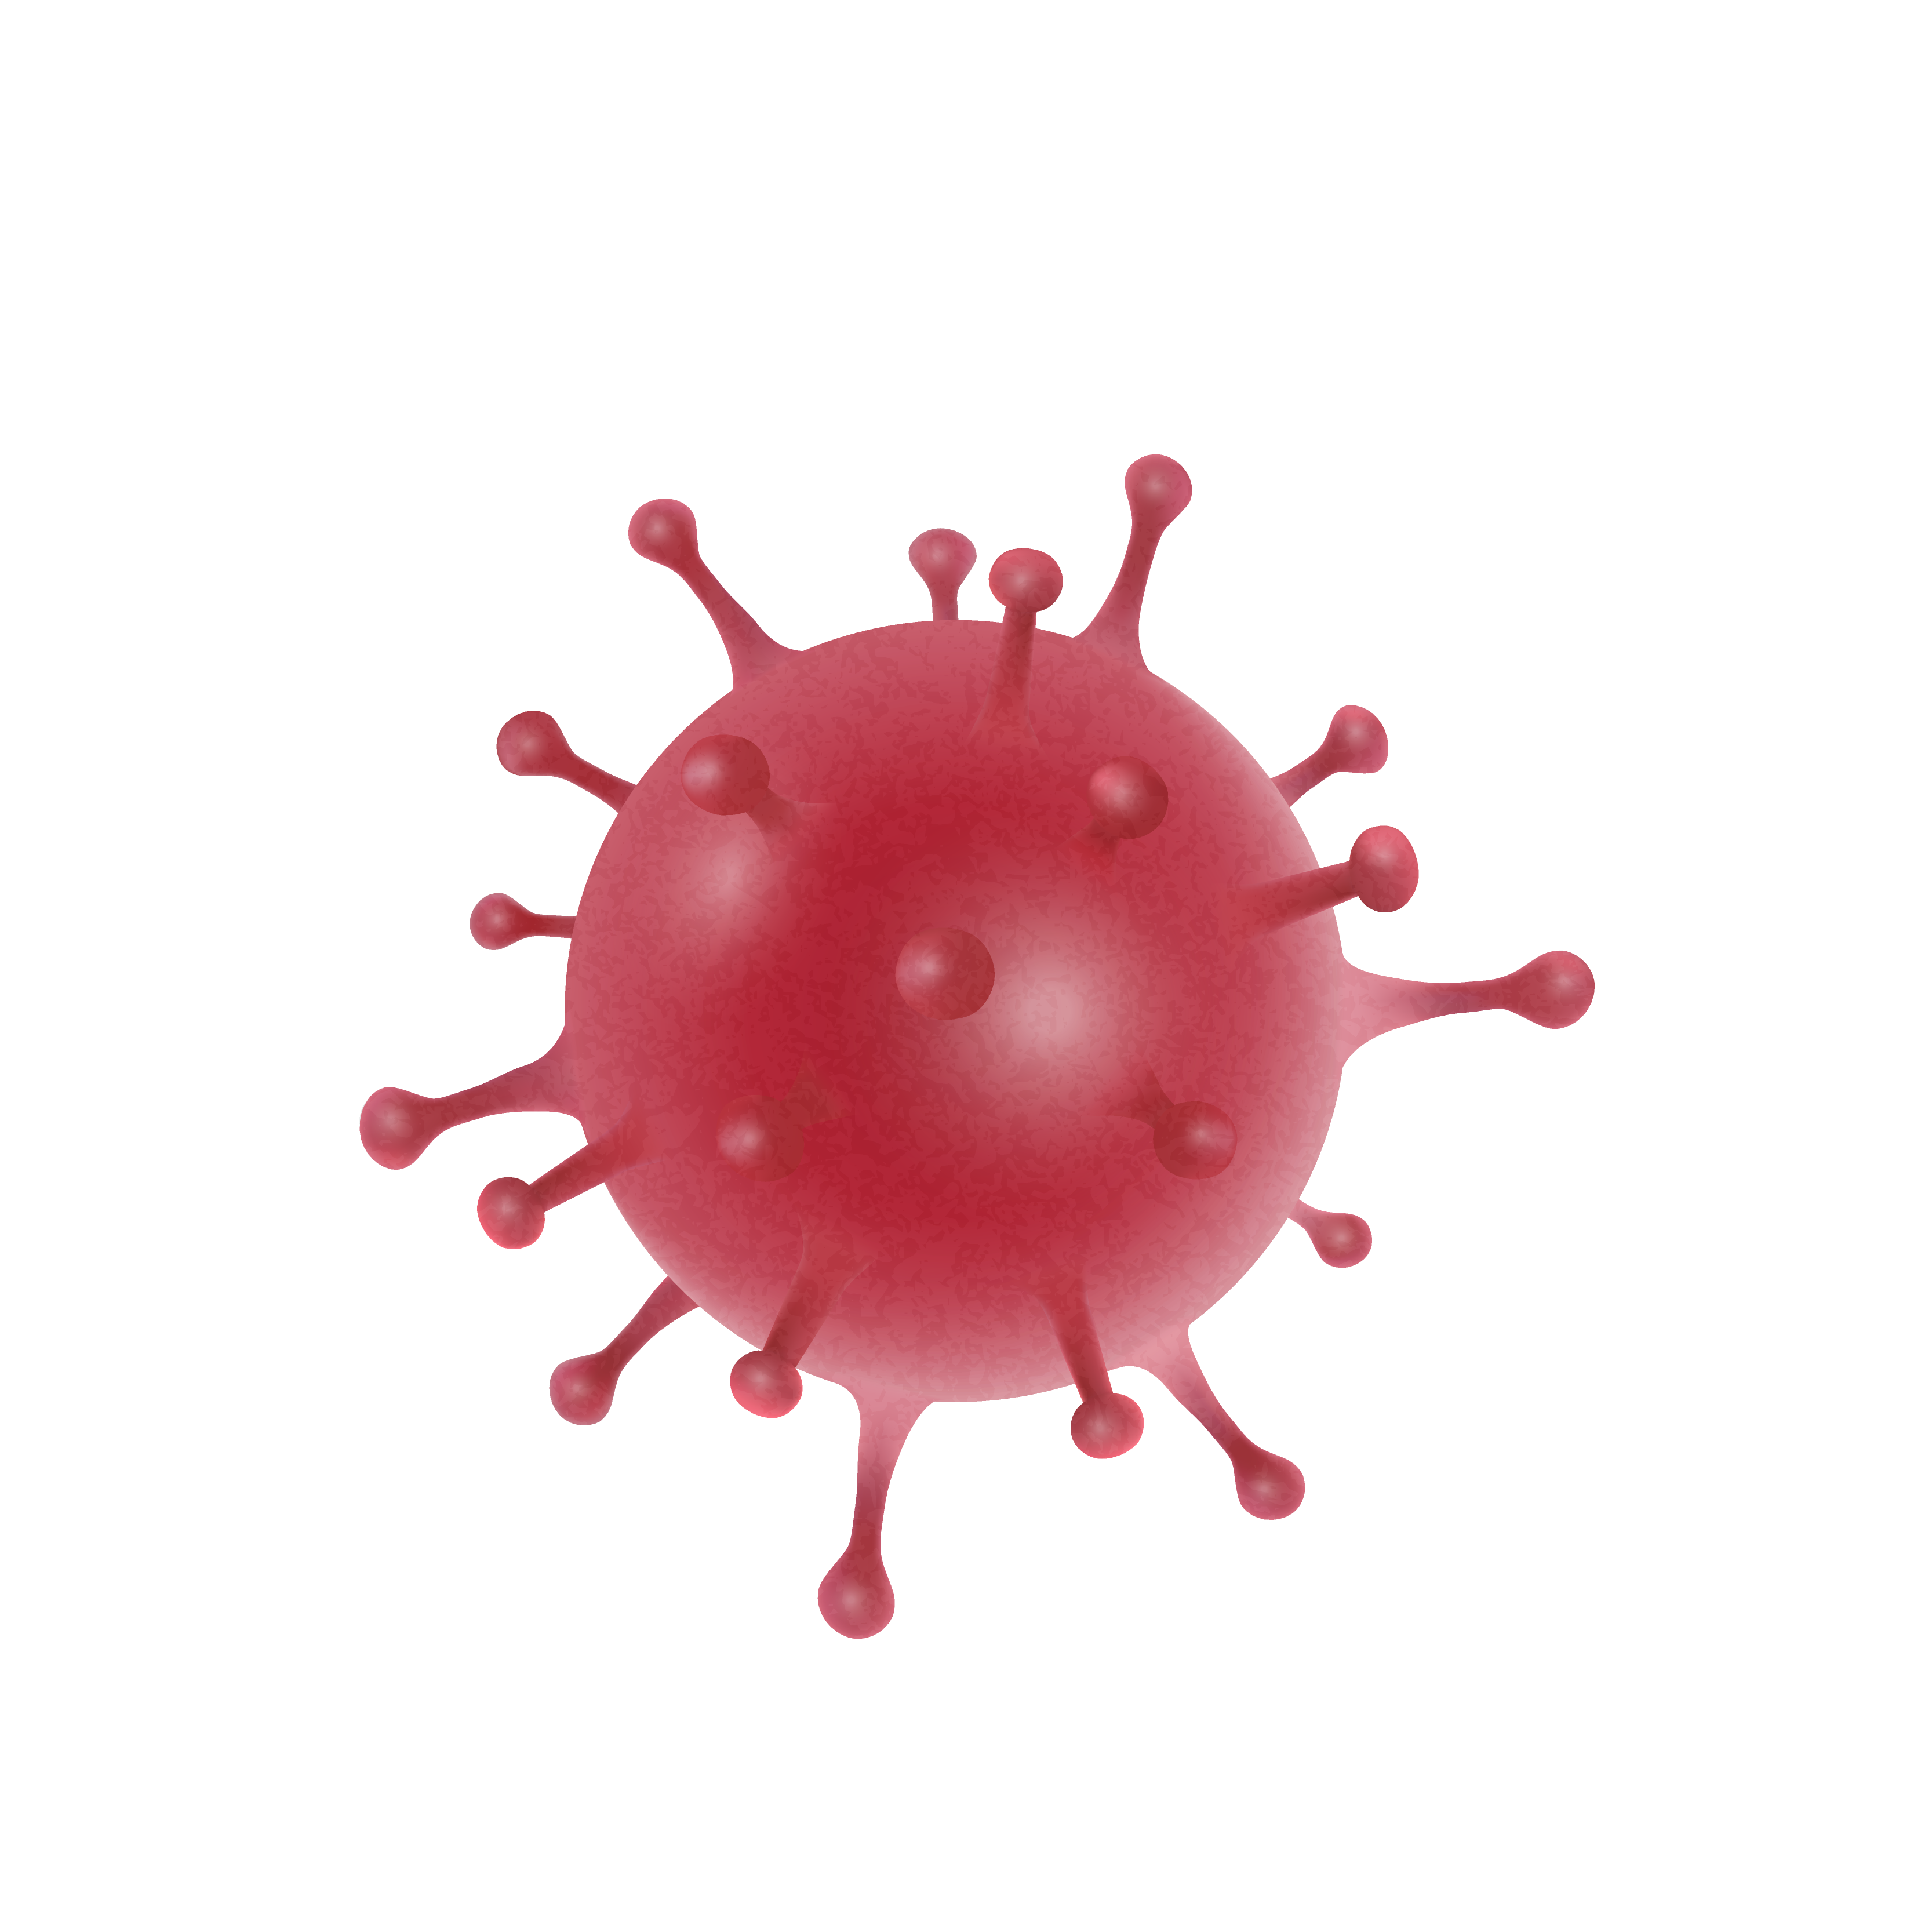 imagem de virus para exame de covid-19